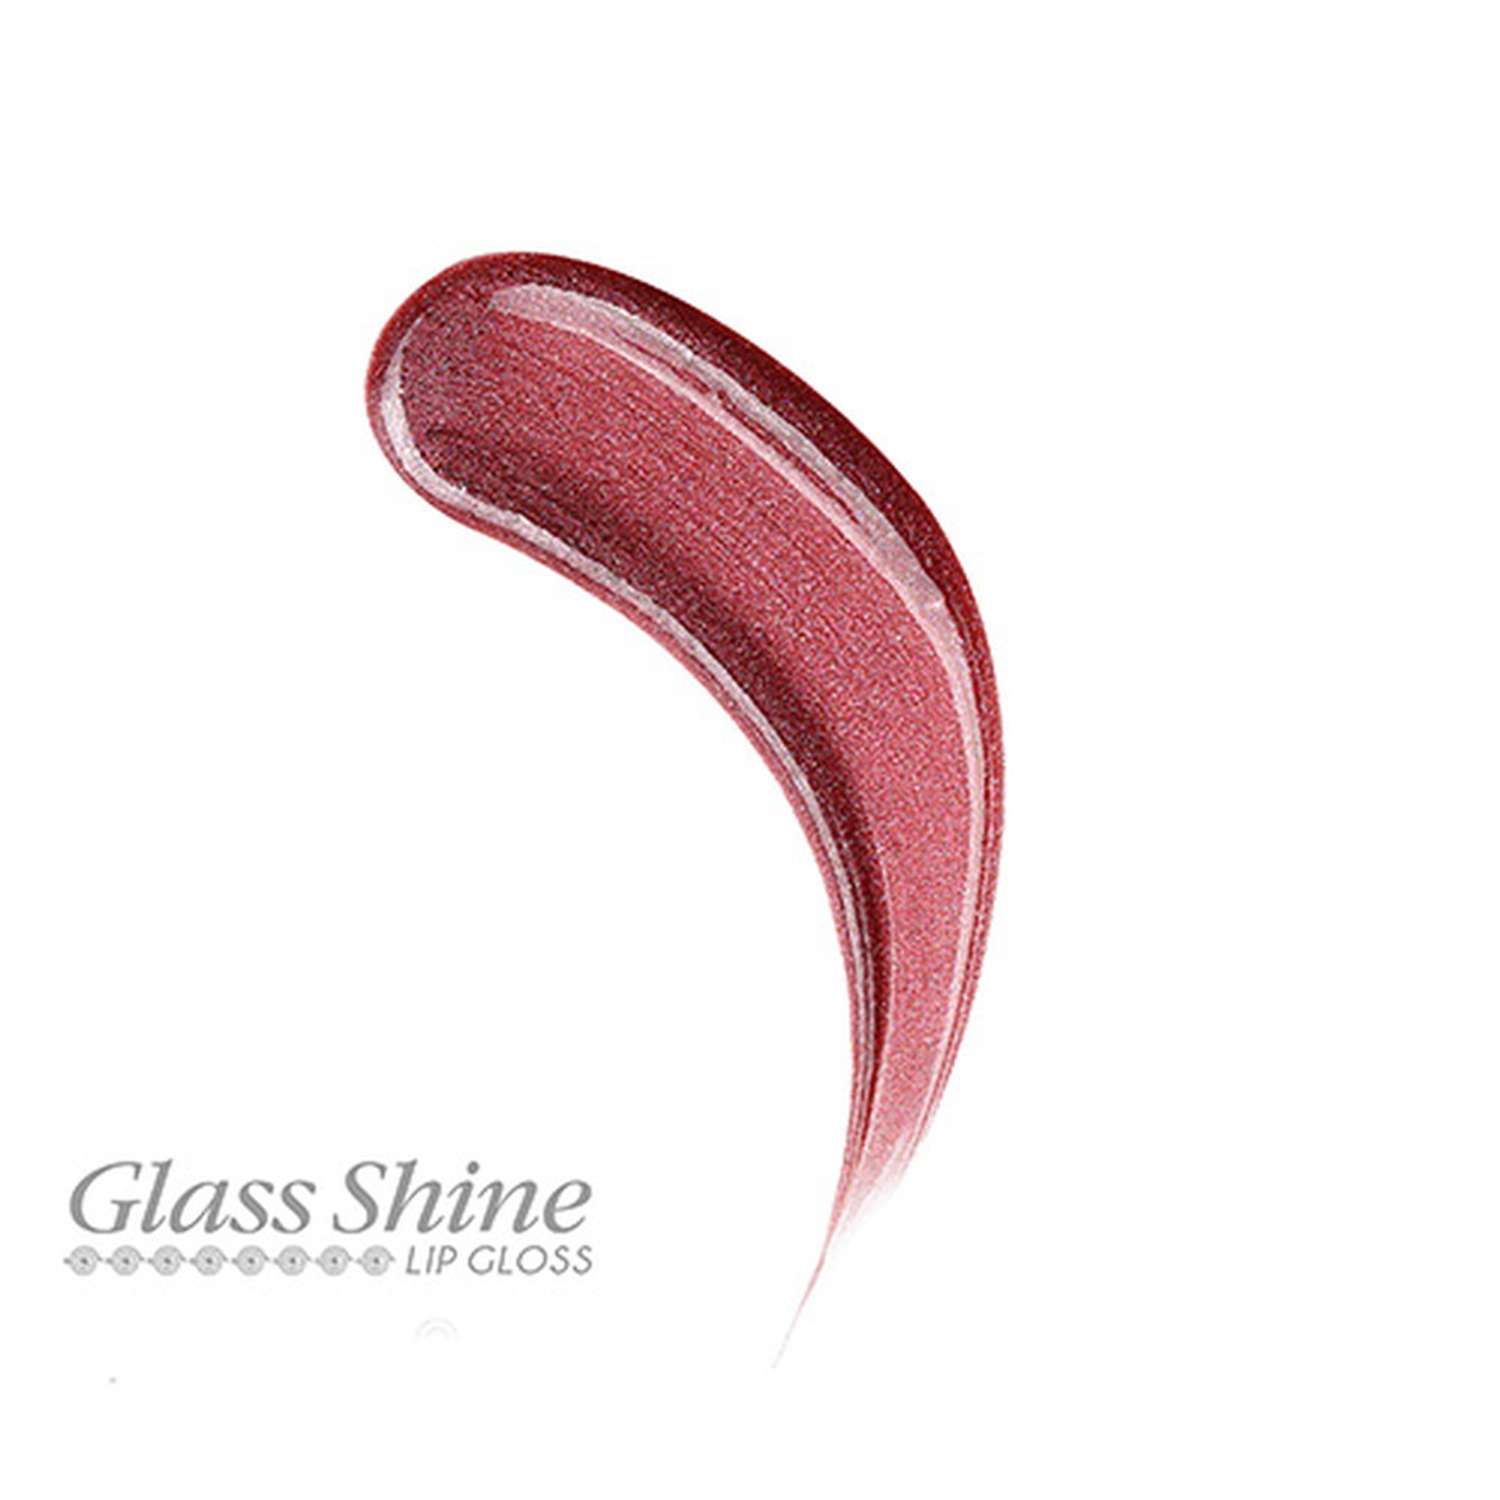 Блеск для губ Luxvisage Glass shine тон 20 - фото 5